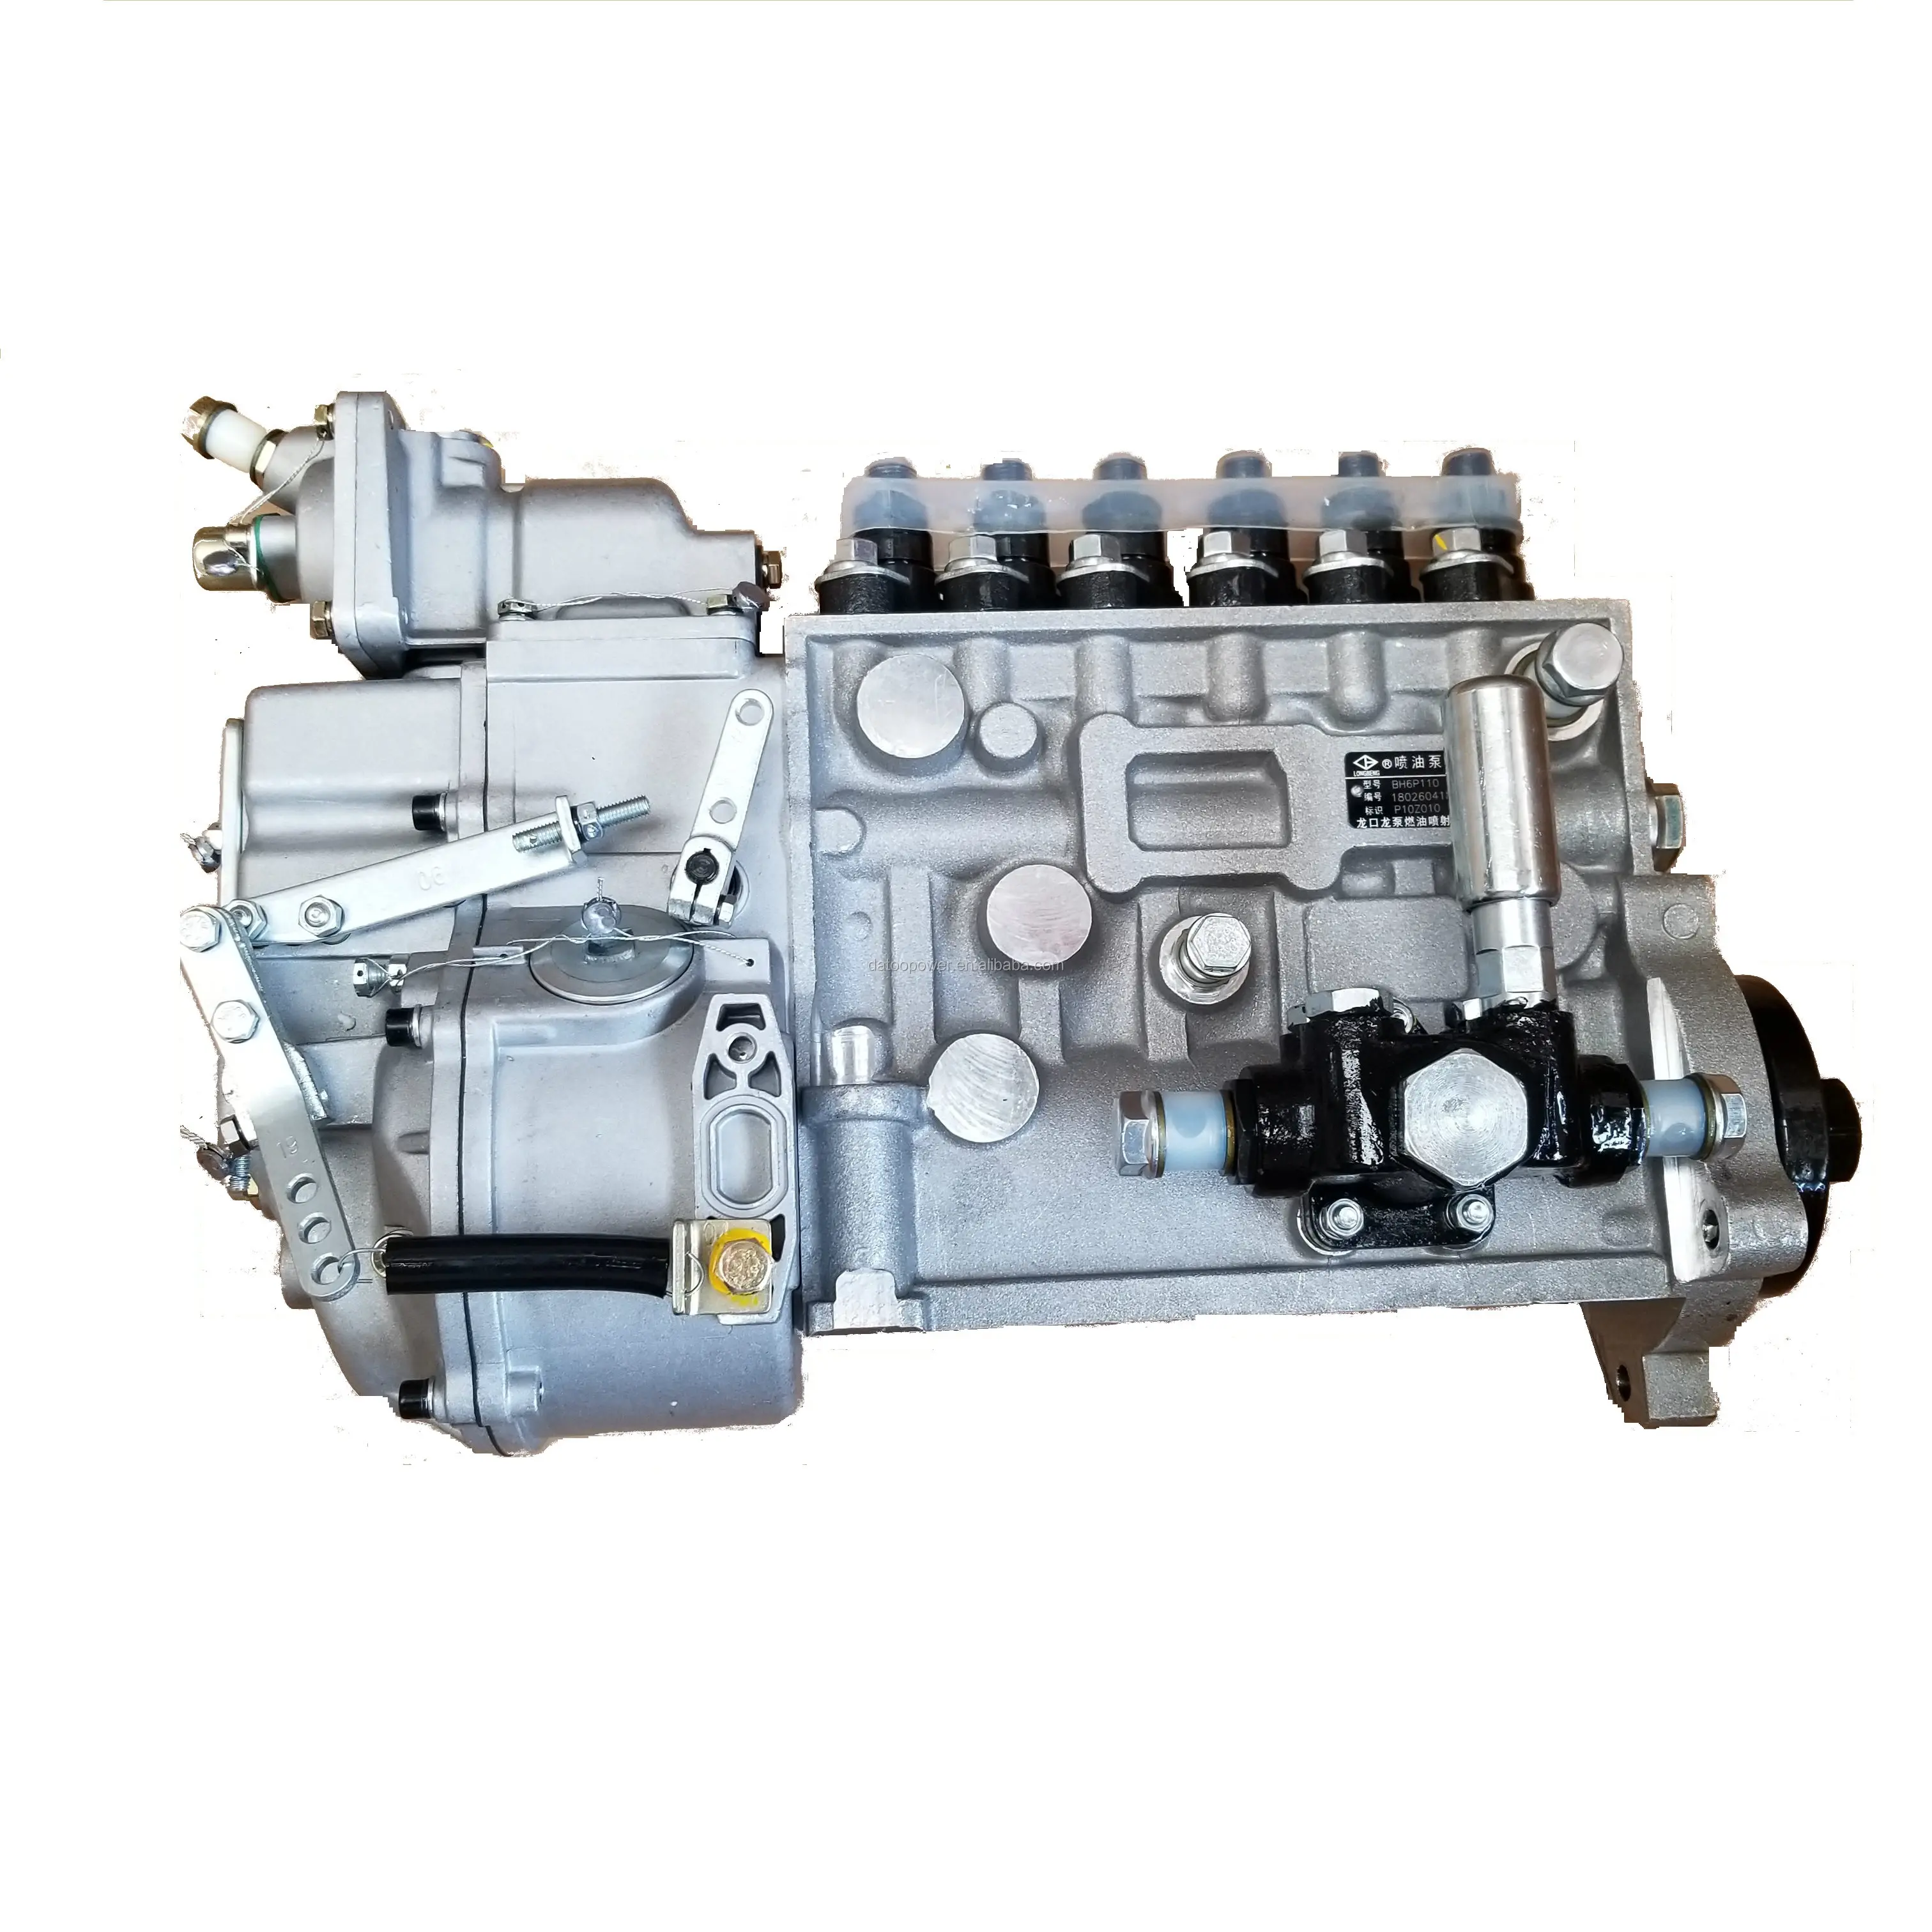 Shanghai dieselmotor ersatzteile c6121 sc11cb220g2b1 baumaschinen motor teile kraftstoffe in spritz pumpe P10Z010 BH6P110